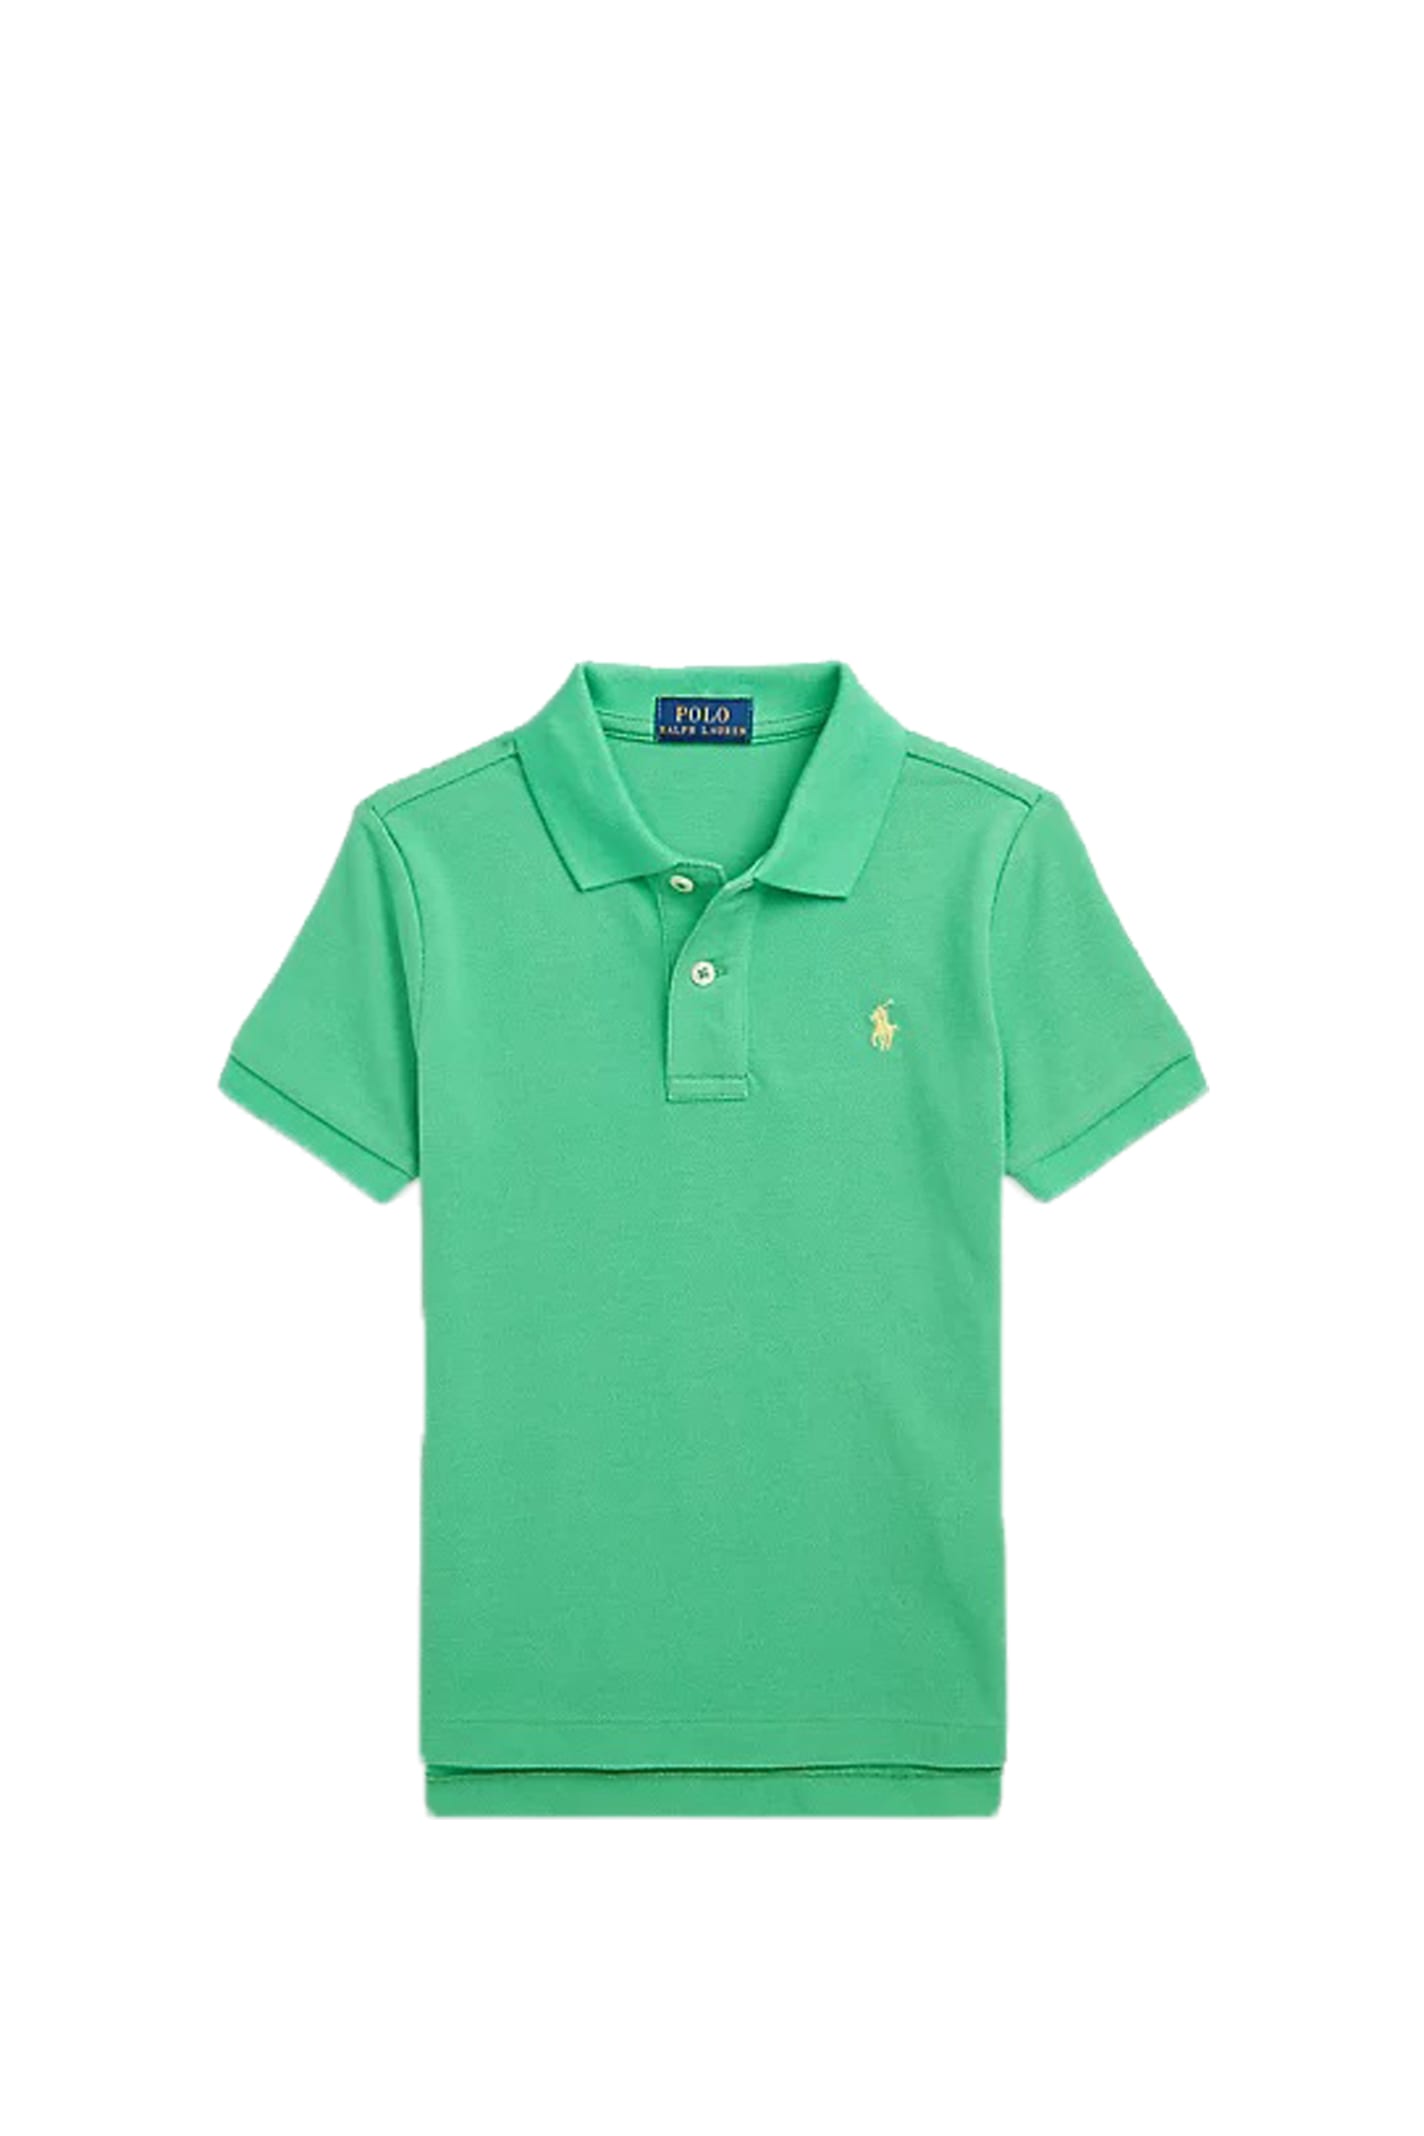 Ralph Lauren Kids' Polo Shirt In Green